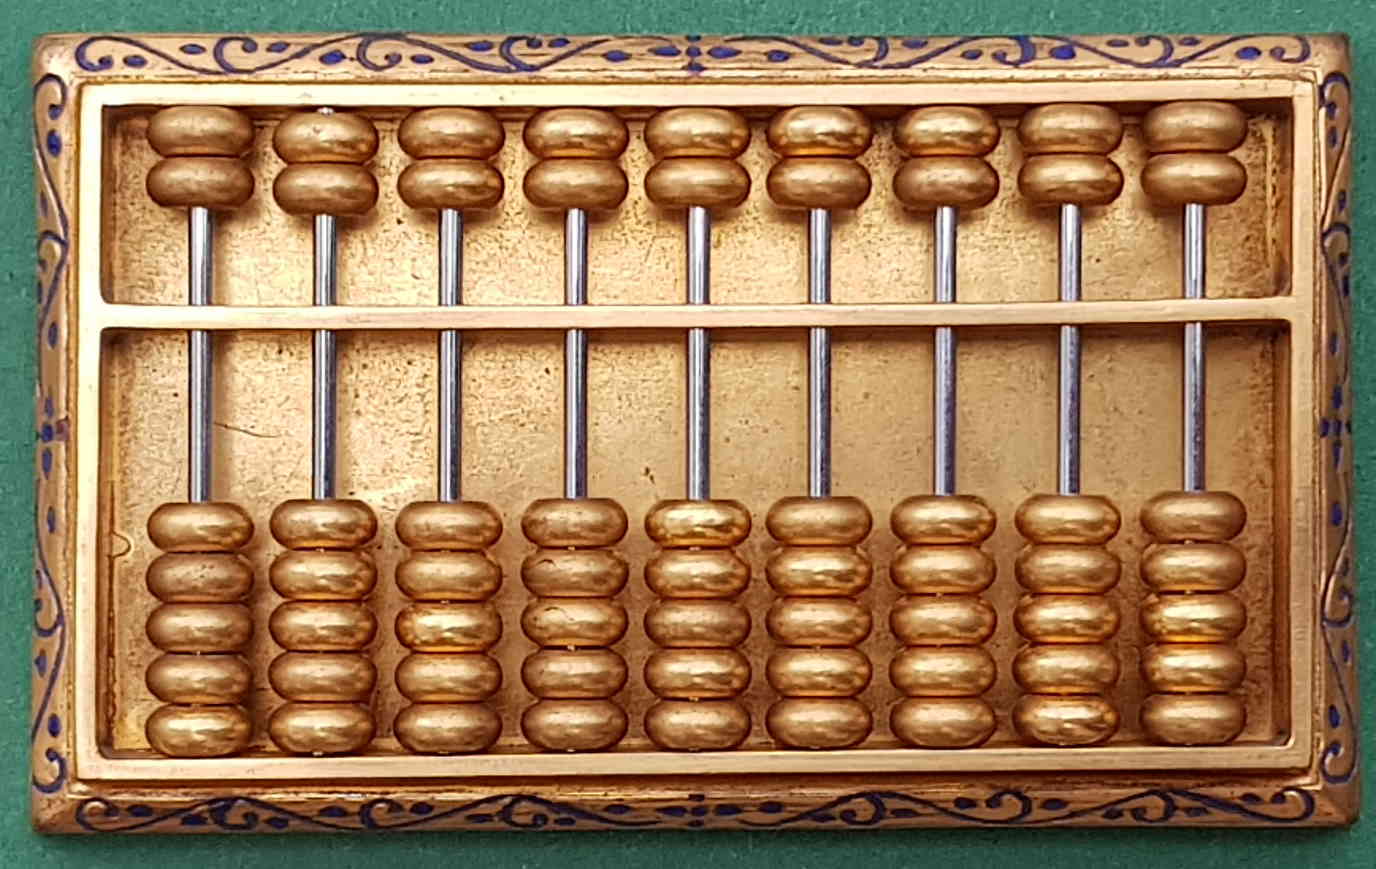 Schlüsselanhänger ABAKUS chinesische Rechenmaschine Keachain Abacus 